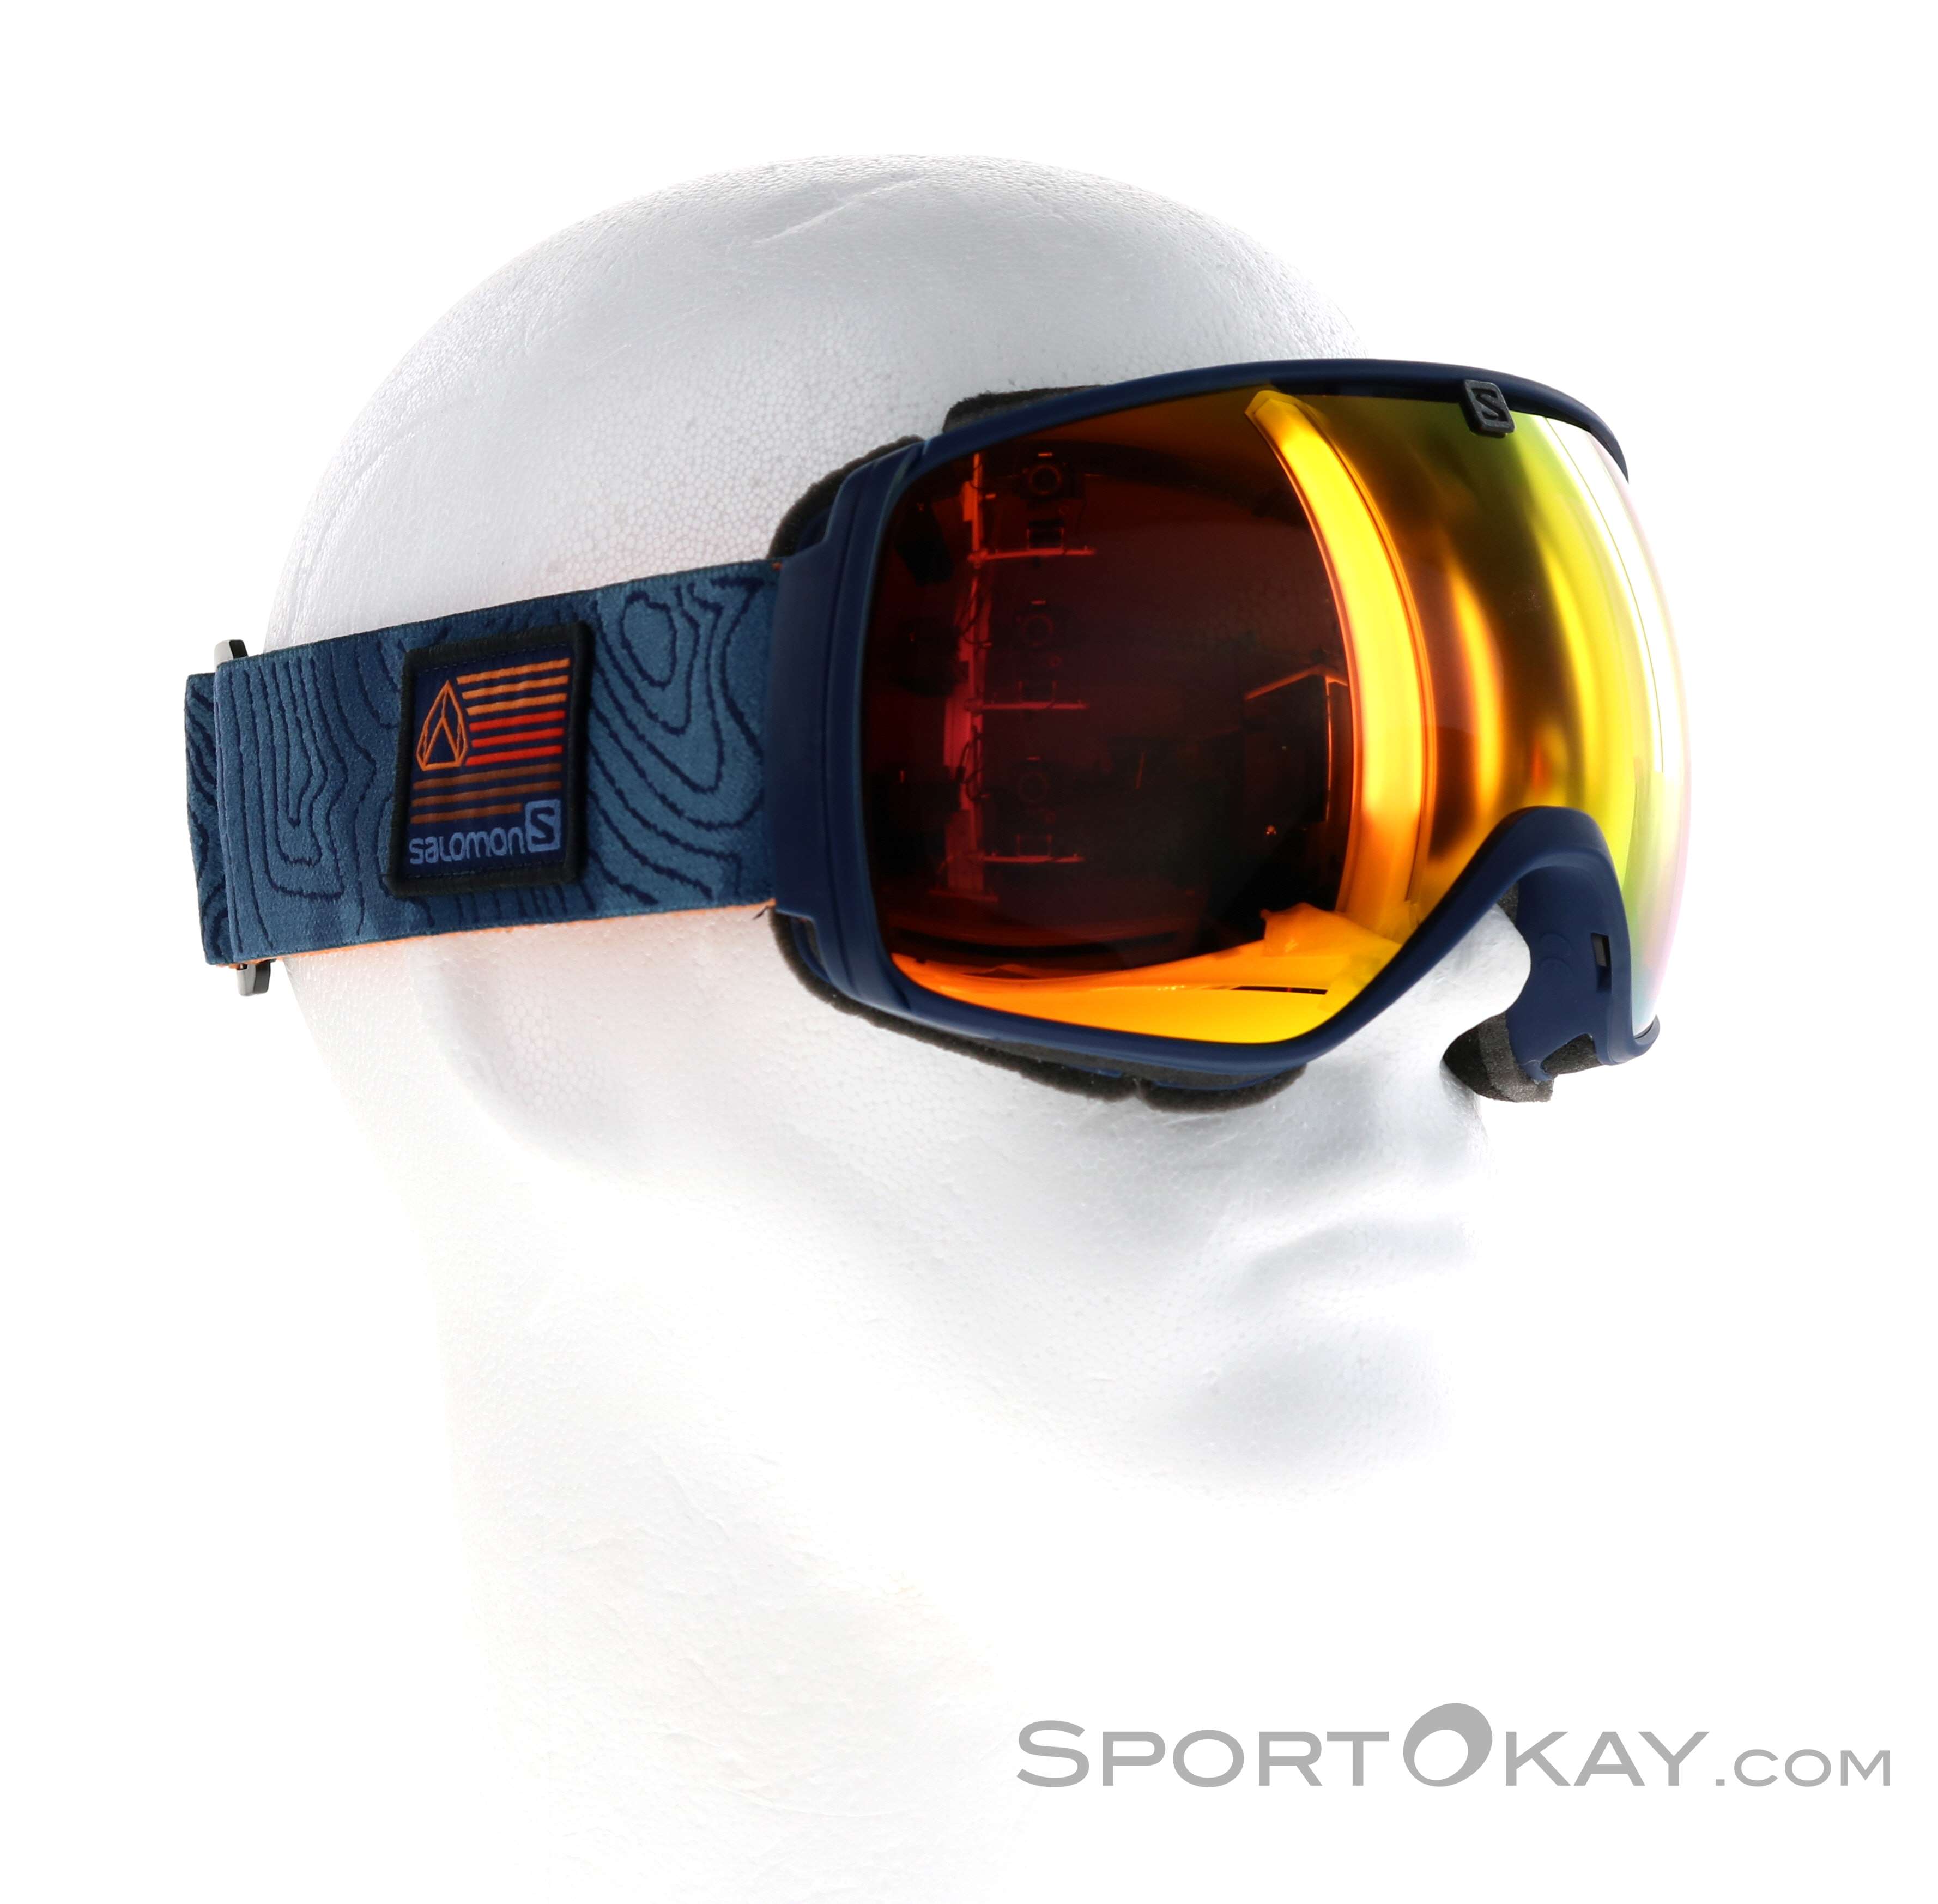 Salomon XT One Maschera da Sci - Maschere da sci - Occhiali - Sci alpinismo  - Tutti